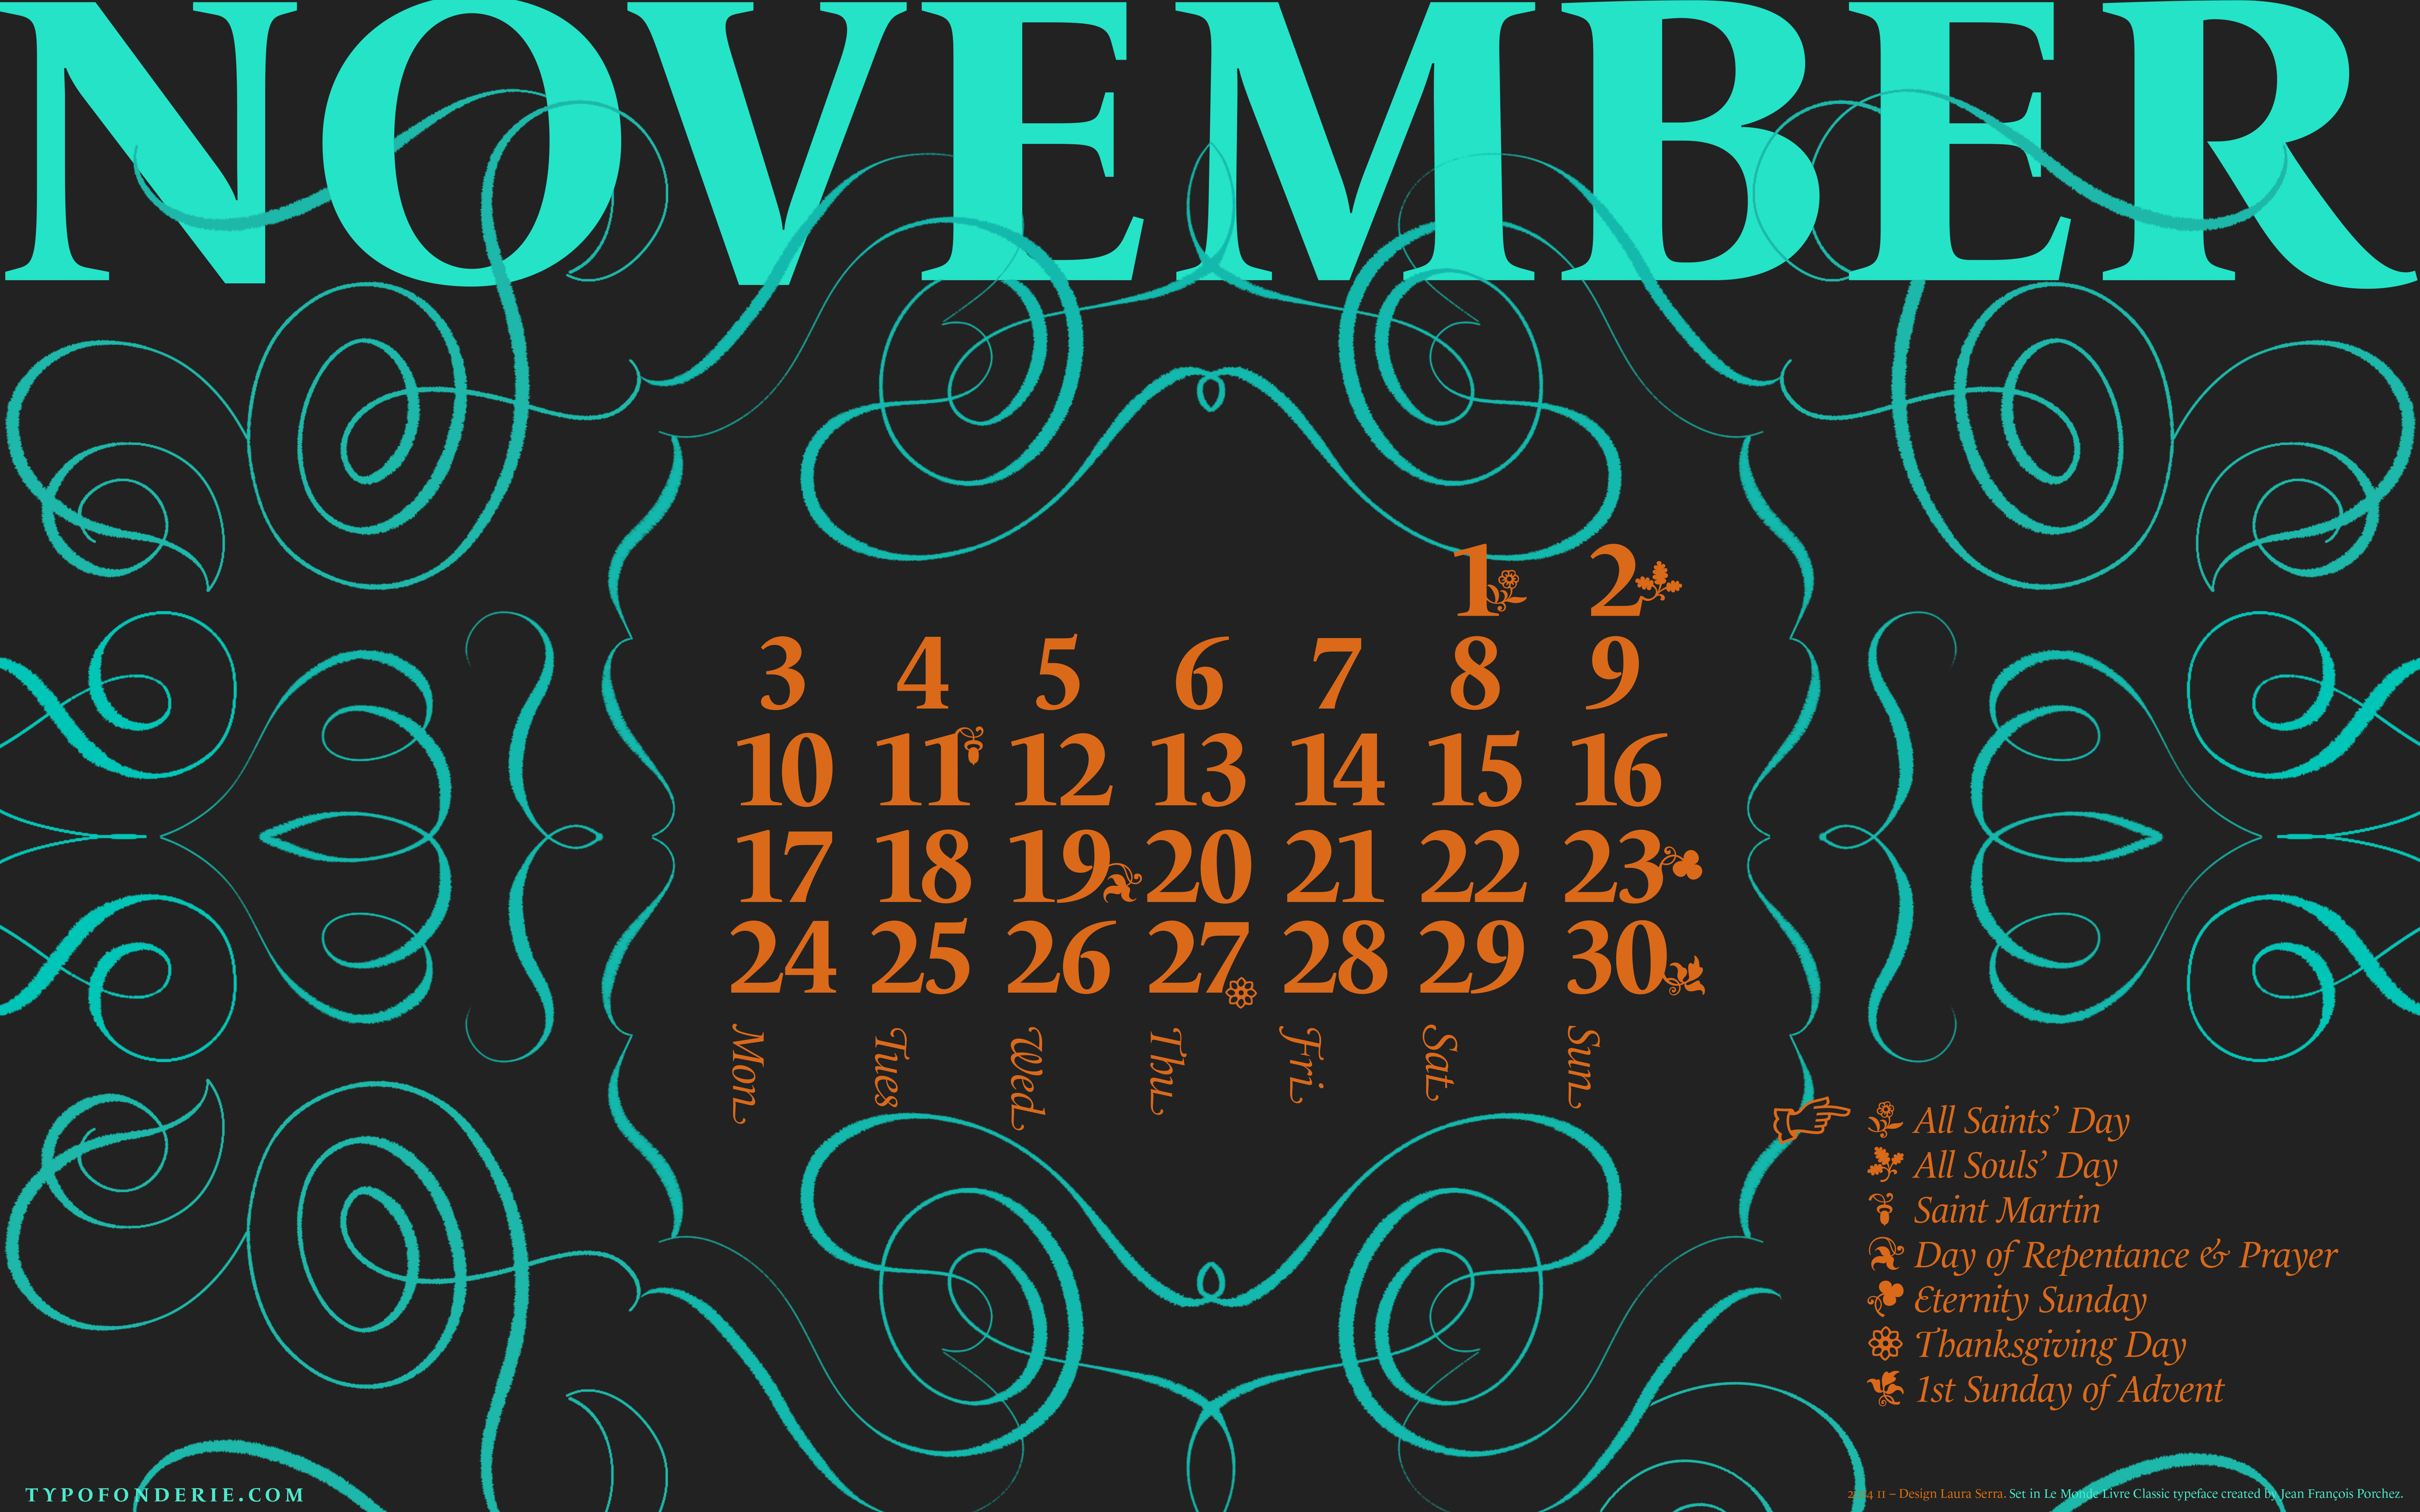 A wallpaper calendar November 2014 featuring Le Monde Livre